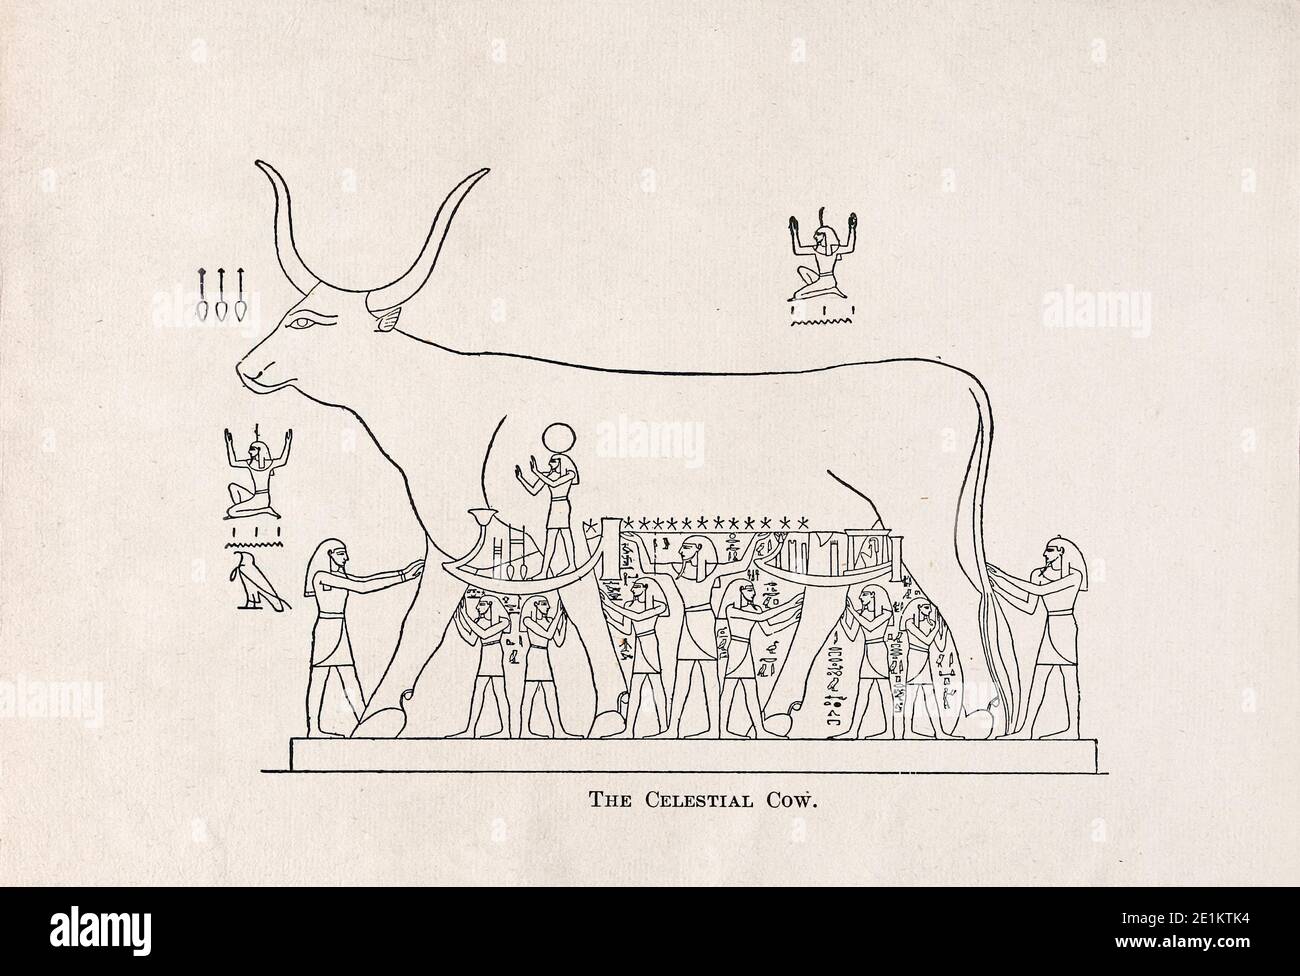 Gravure de l'Égypte ancienne. Le vieux royaume. La vache céleste. Divers genii soutiennent ses membres, tandis qu'au milieu, Shu, le dieu de l'atmosphère Banque D'Images